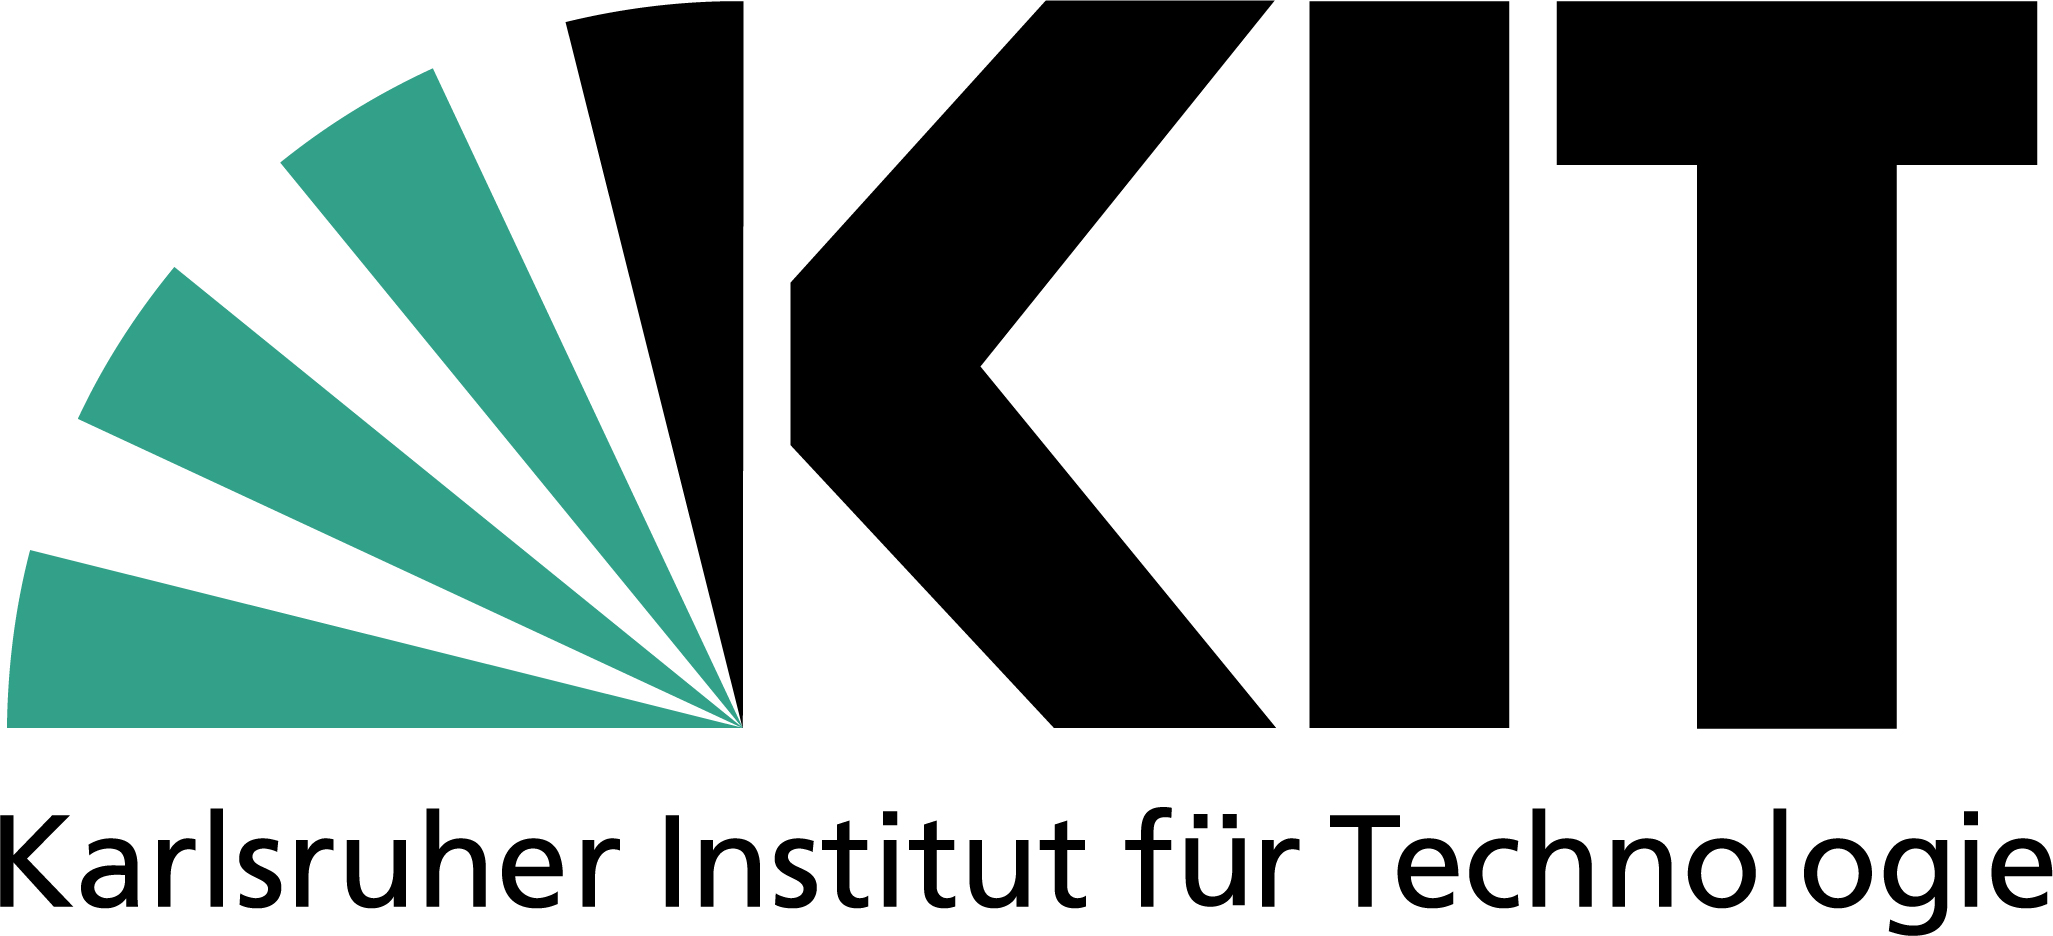 Karlsruhe Institute of Technology, Skeleton Technologies